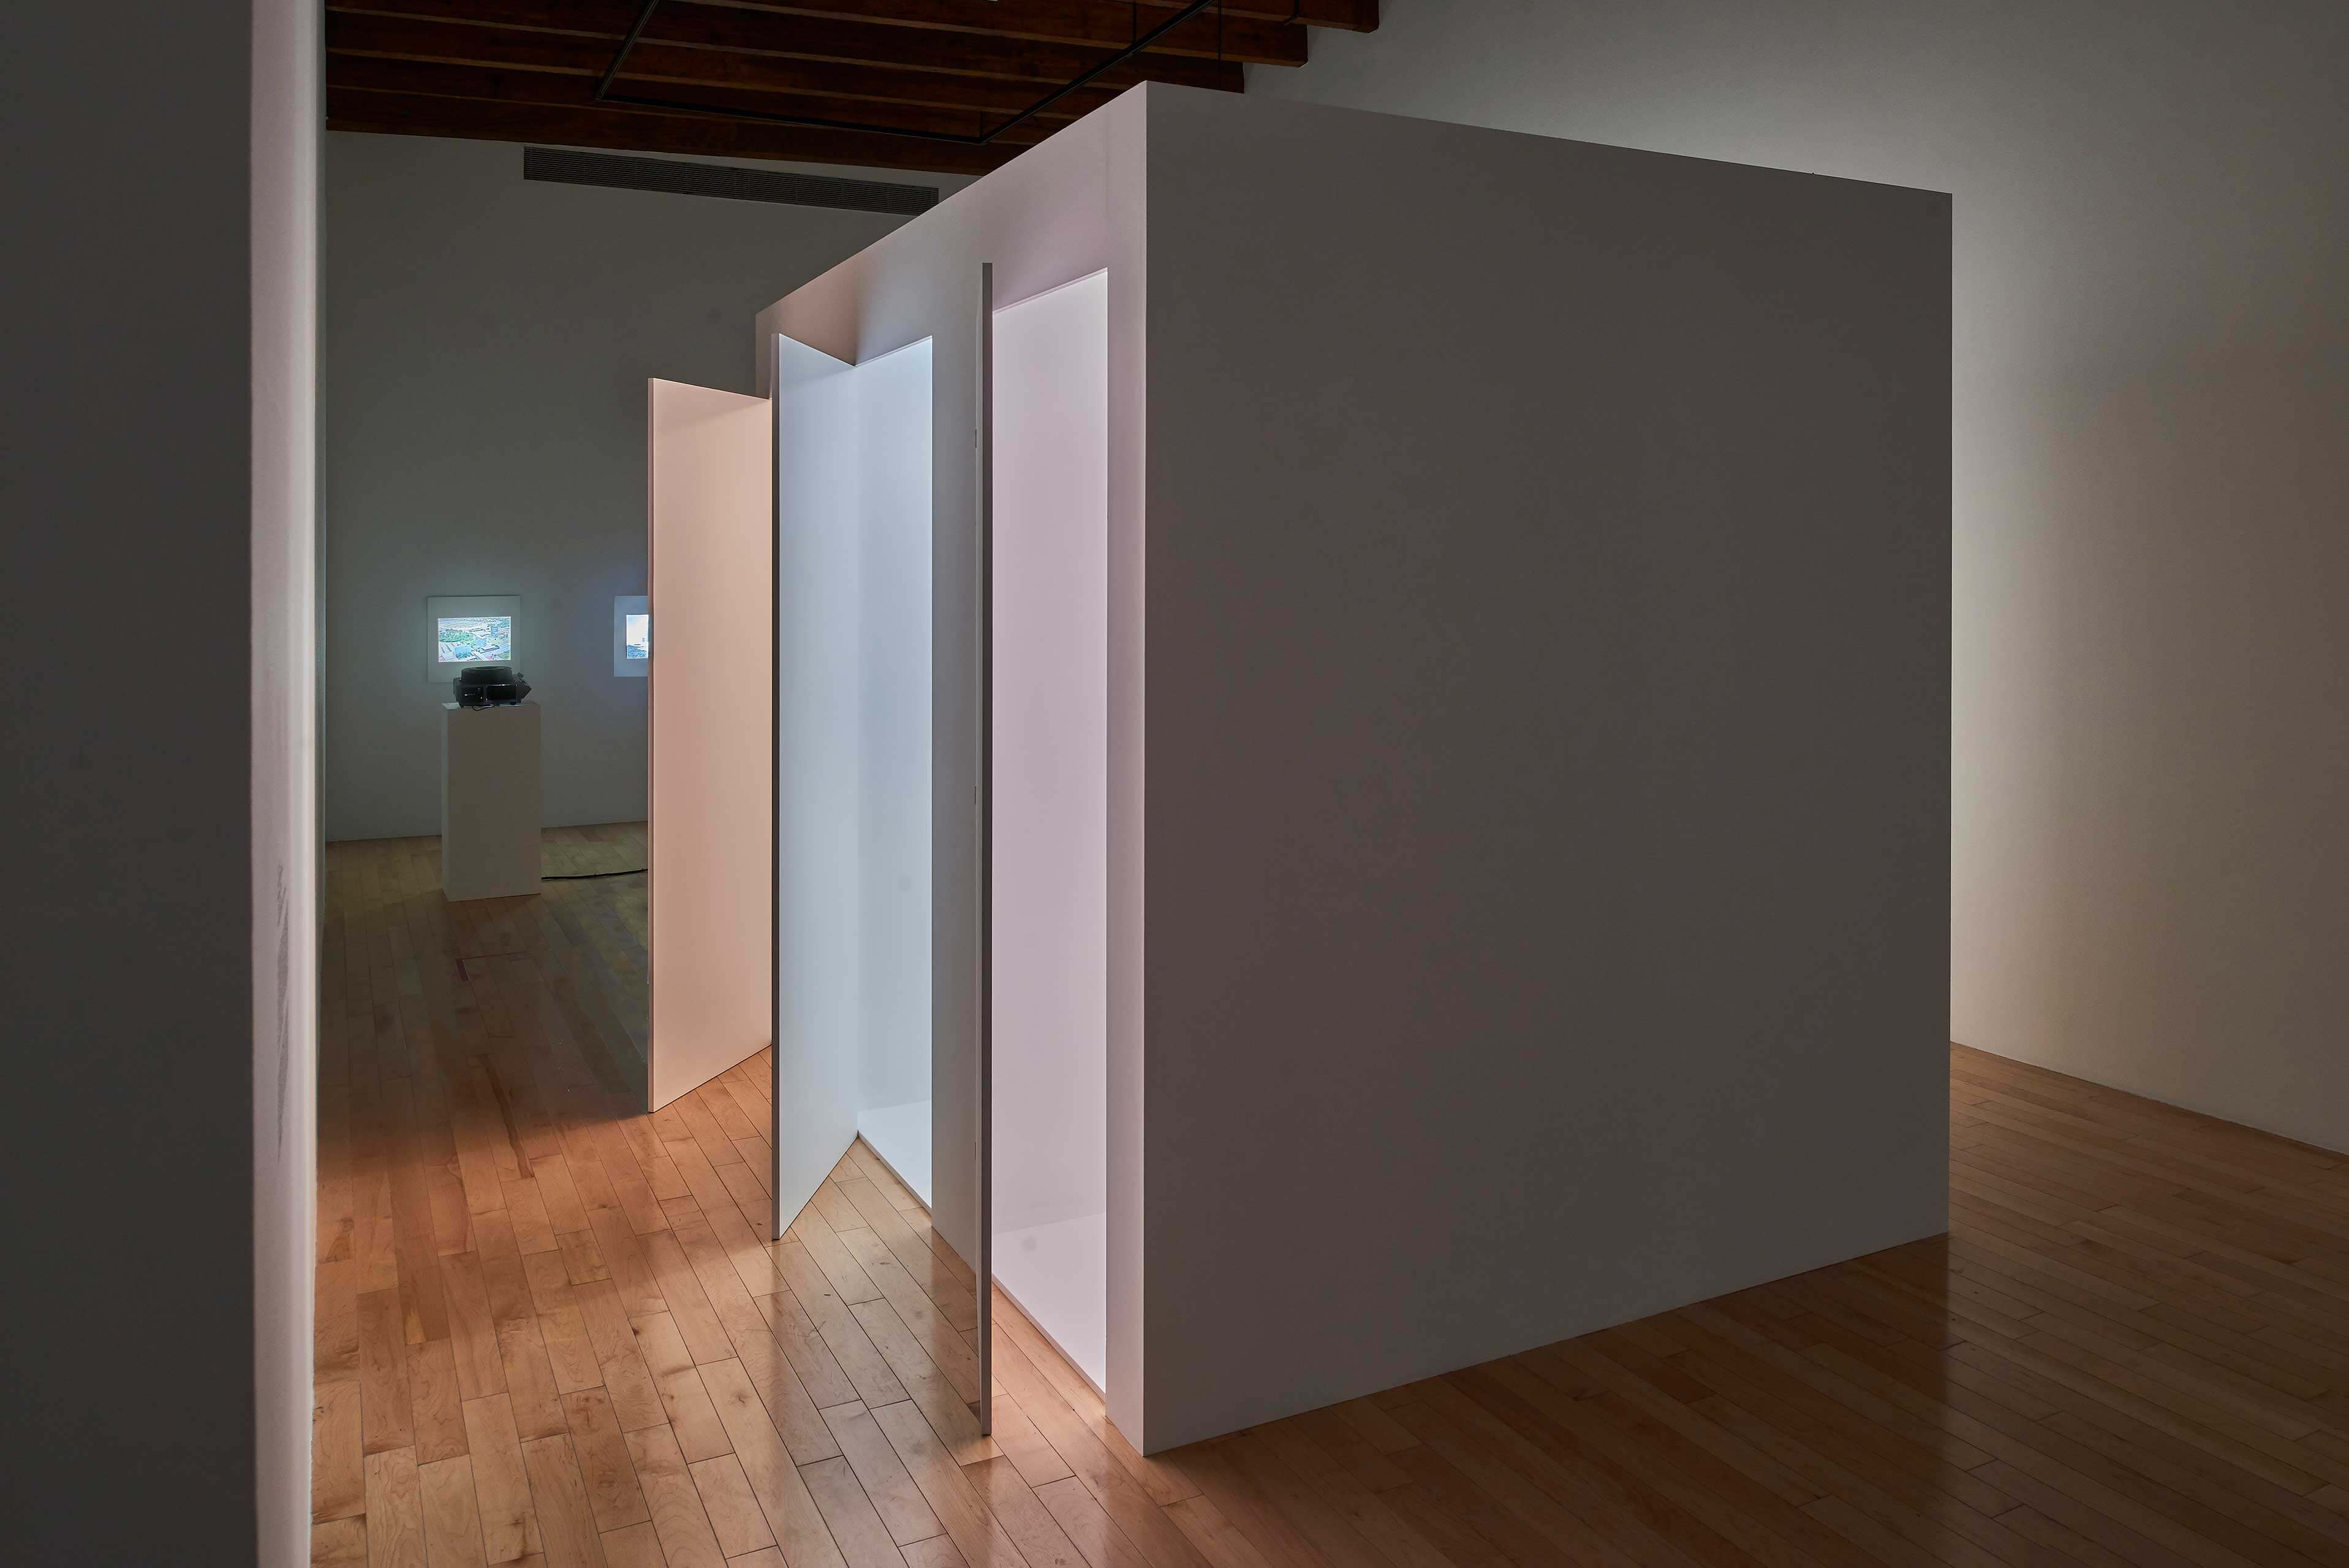 Light Rooms | El tiempo en las cosas II. Salas de Arte Contemporáneo | Museo Amparo, Puebla